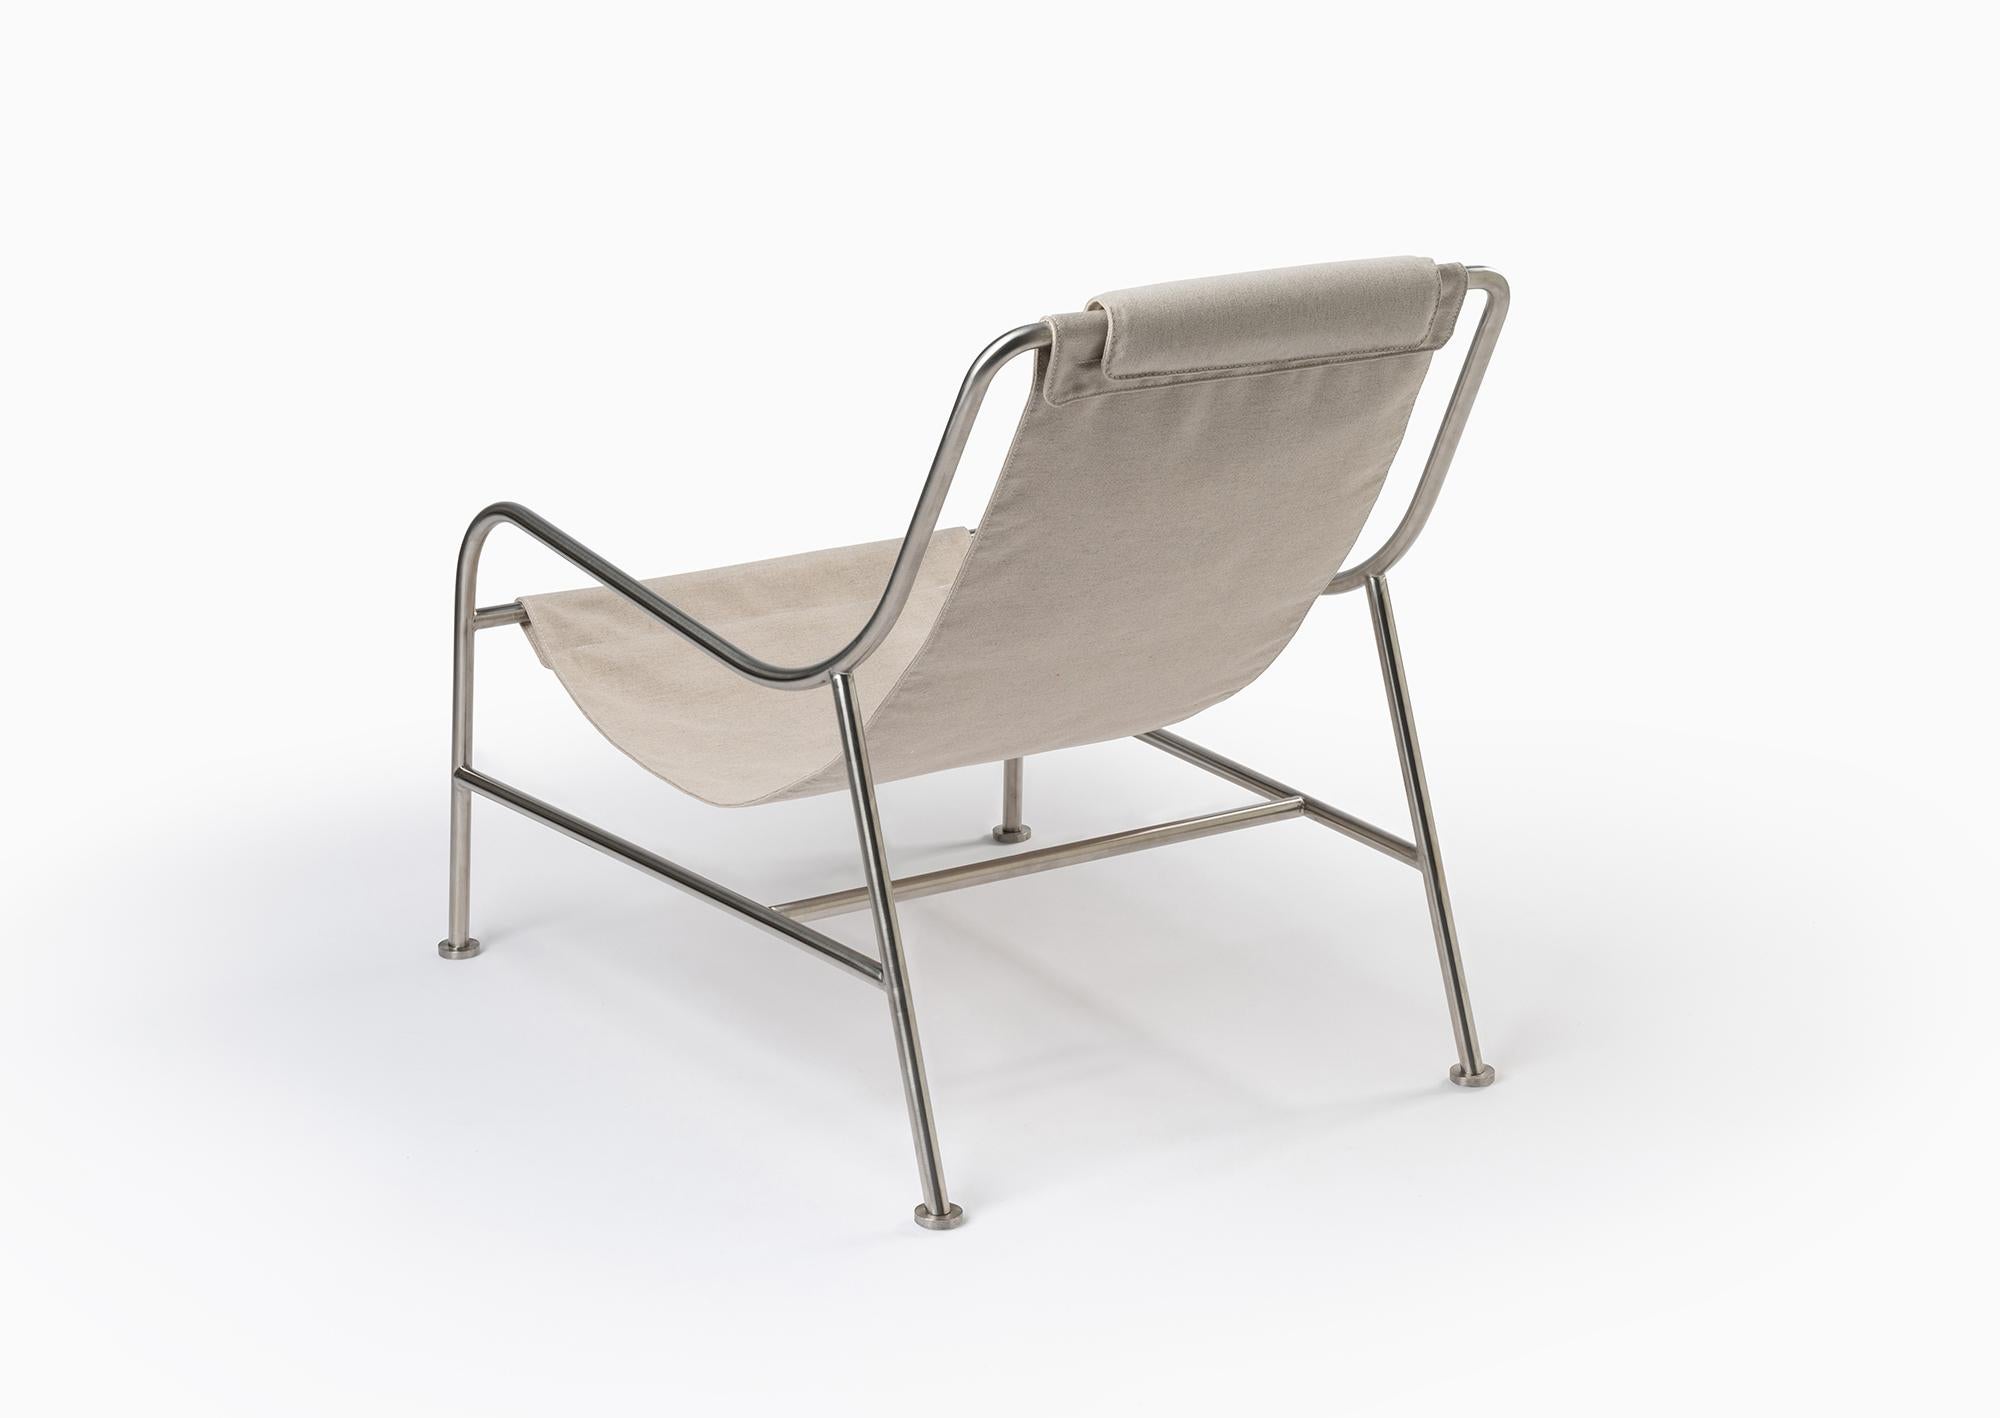 Die Outdoor-Version des LISBOA-Sessels lädt dazu ein, sich in der Sonne zu entspannen und die langen Tage und warmen Sommernächte zu genießen. 

Der für das Leben im Freien konzipierte Stuhl ist dank der offenen Struktur aus Edelstahlrohren sehr